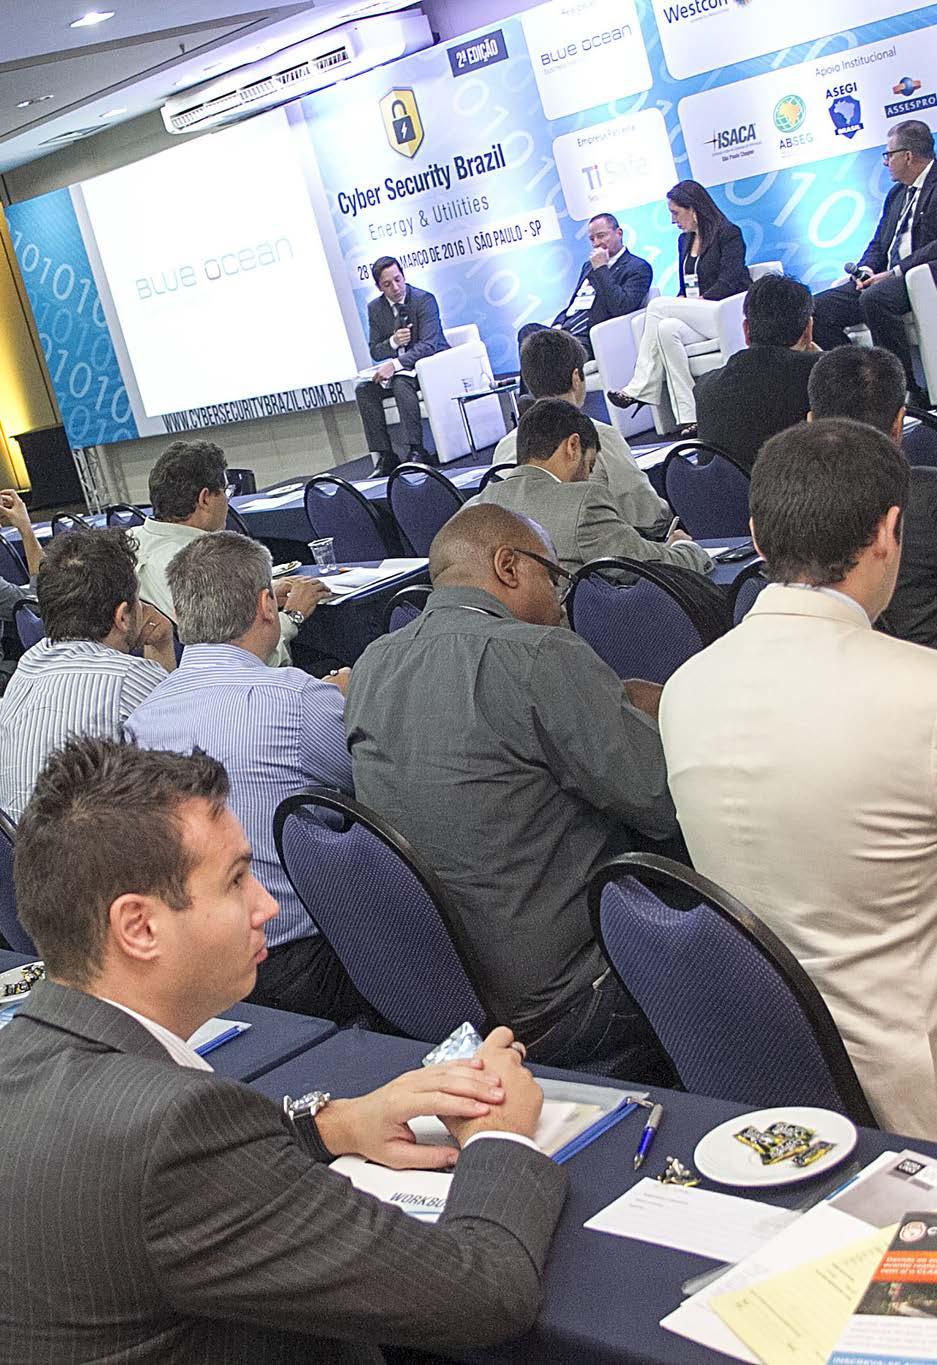 O CYBER em 2016 APRESENTAÇÃO Entre os dias 28 e 29 de Março de 2016 aconteceu em São Paulo a 2ª Edição da Conferência Cyber Security Brazil Energy & Utilities.